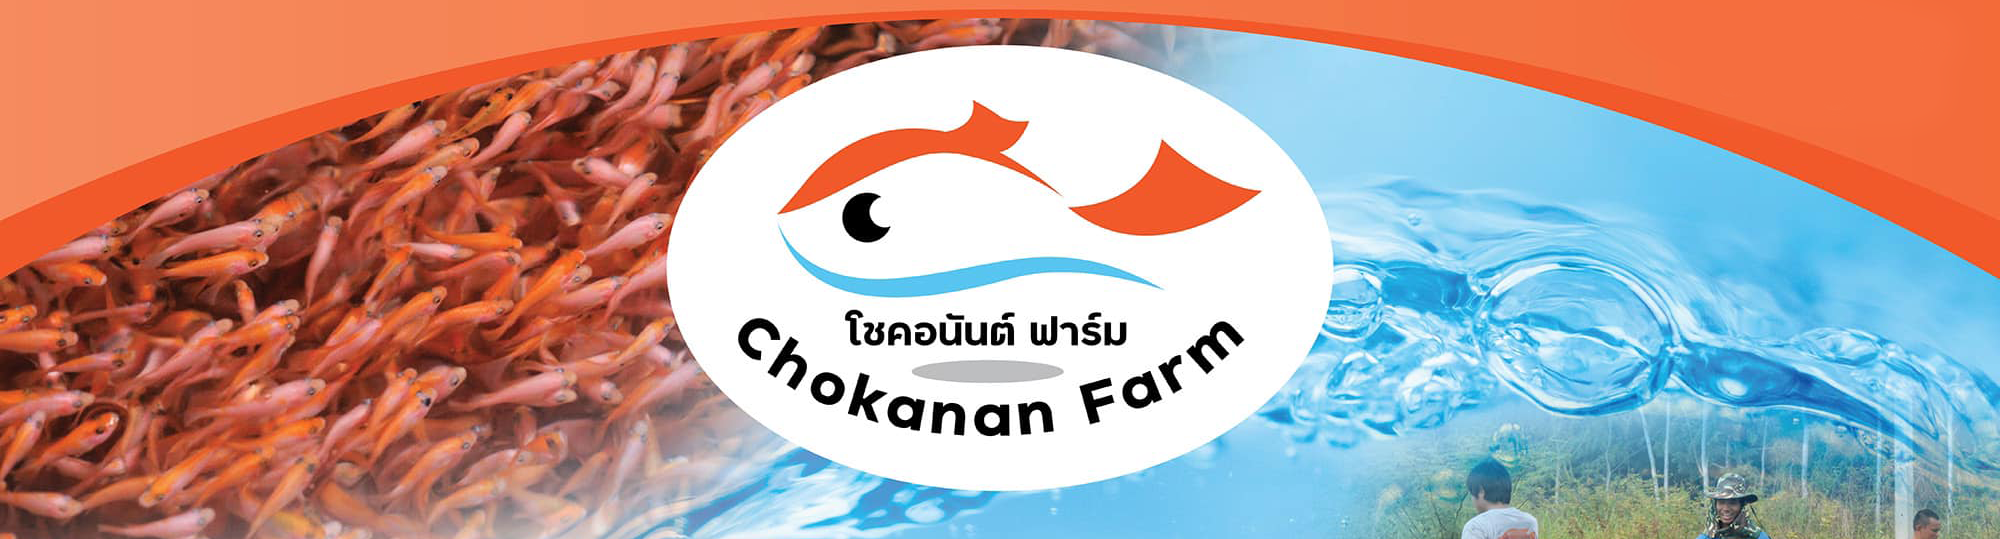 โชคอนันต์ฟาร์ม เชียงราย Logo